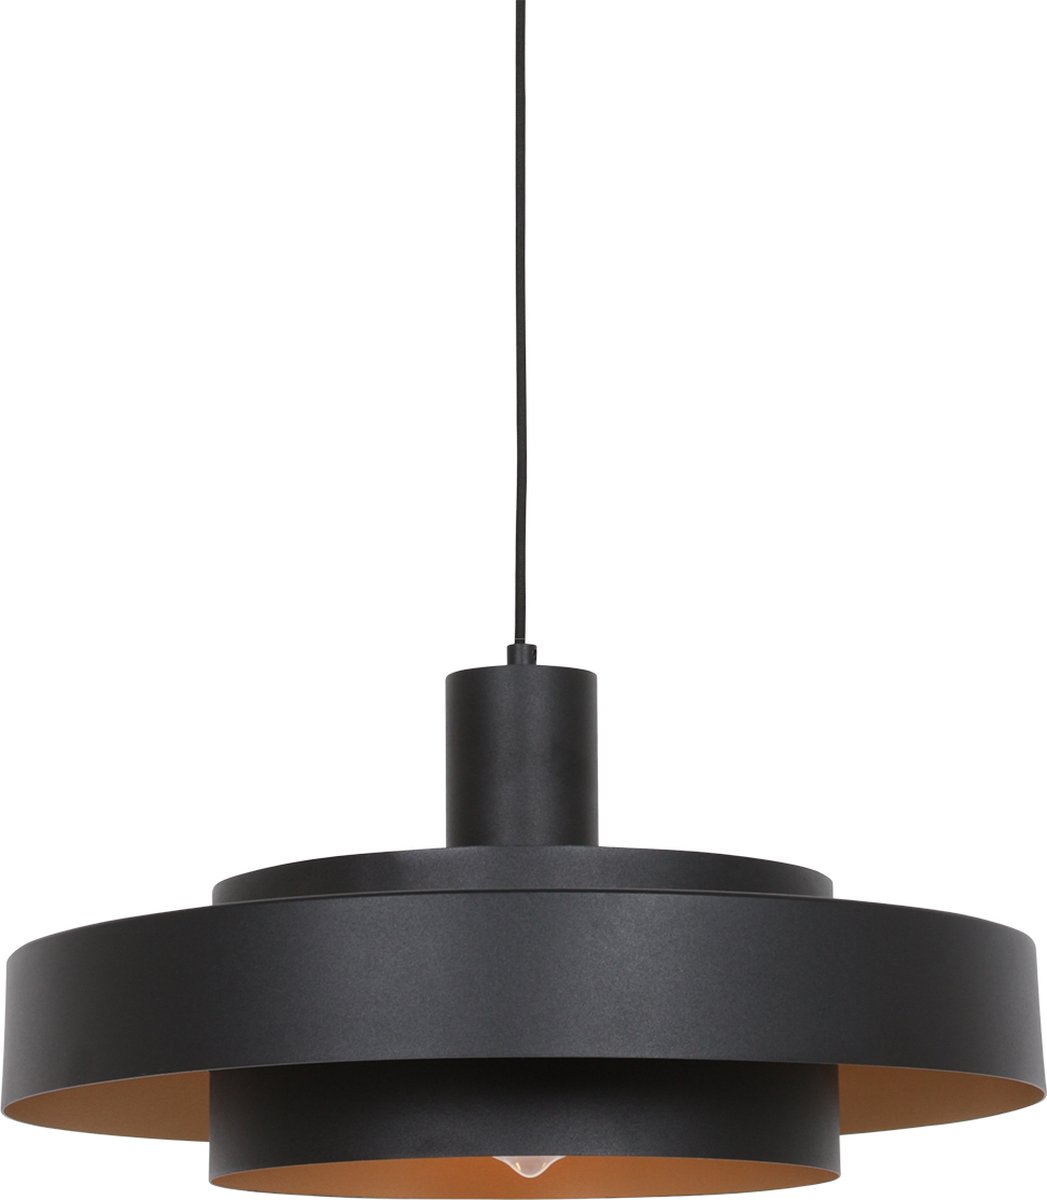 Anne Lighting Flinter hanglamp - met ringen - E27 - Ø50 cm - in hoogte verstelbaar - zwart met gouden binnenzijde